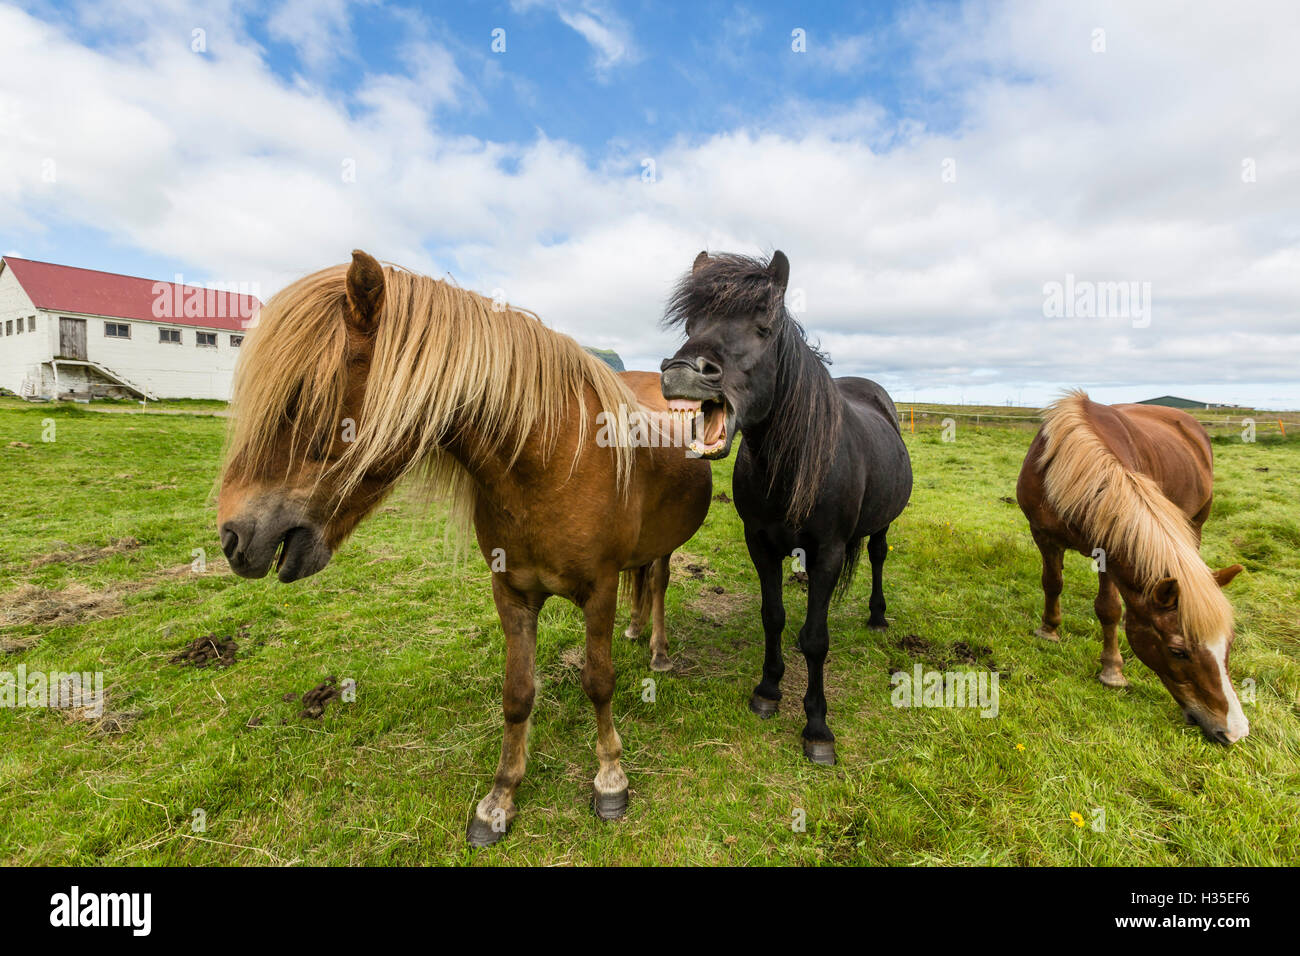 Adulto caballos islandeses (Equus ferus caballus), en una granja en la península de Snaefellsnes, Islandia, las regiones polares Foto de stock